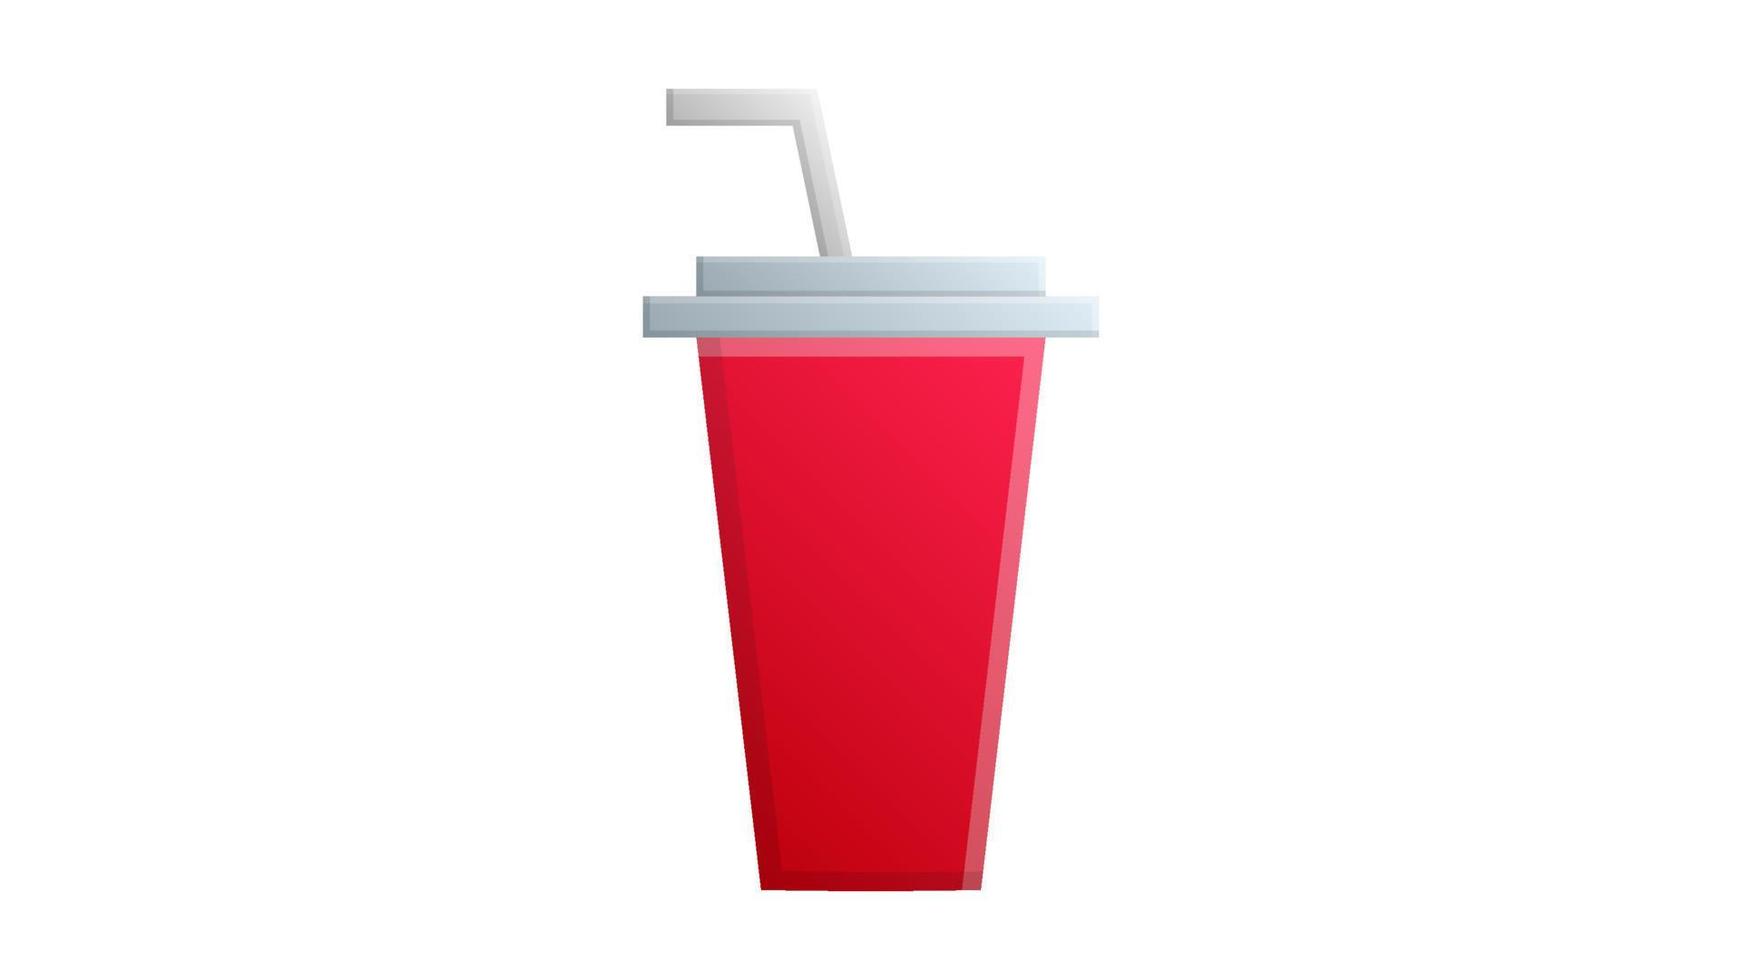 kaffe glas på en vit bakgrund, vektor illustration. röd dryck glas med vit sugrör. maträtter för kaféer och restauranger. återanvändbar kopp för te och kaffe